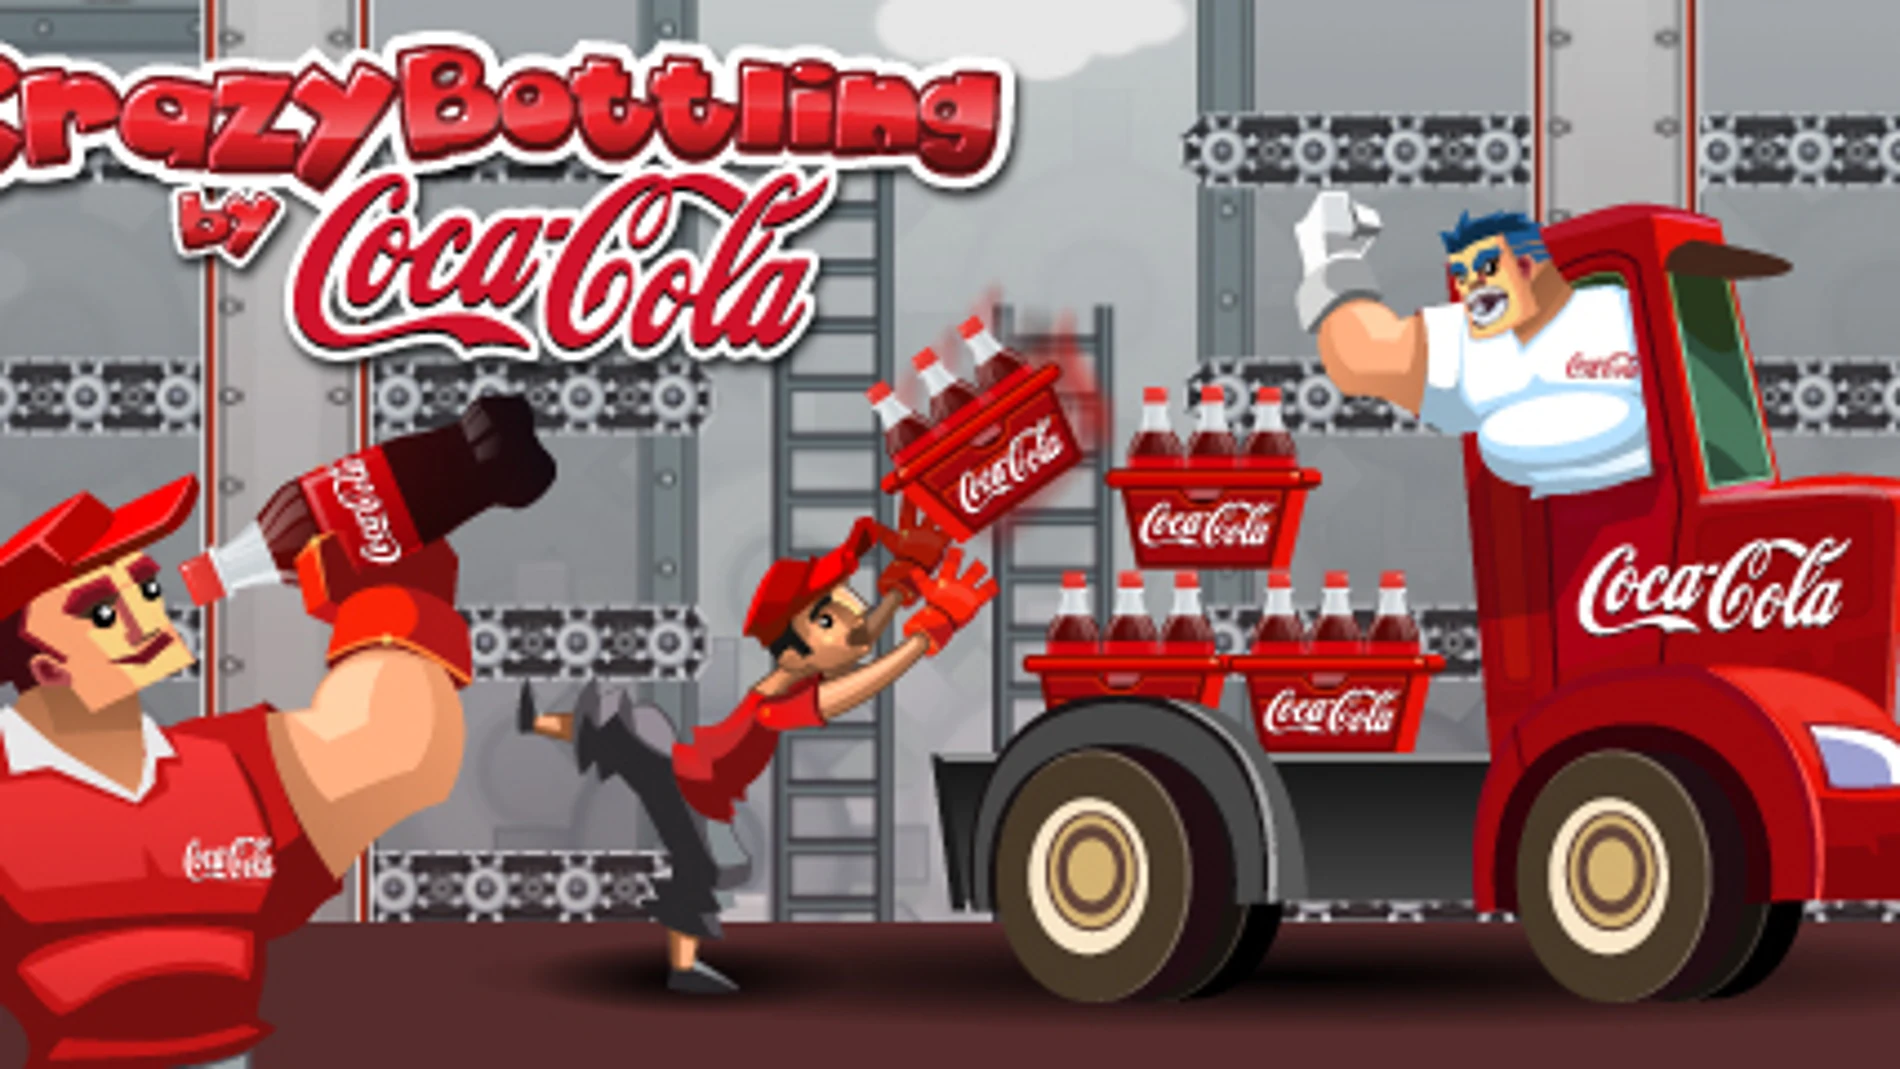 Coca-cola celebra su 125 aniversario en Tuenti con un juego